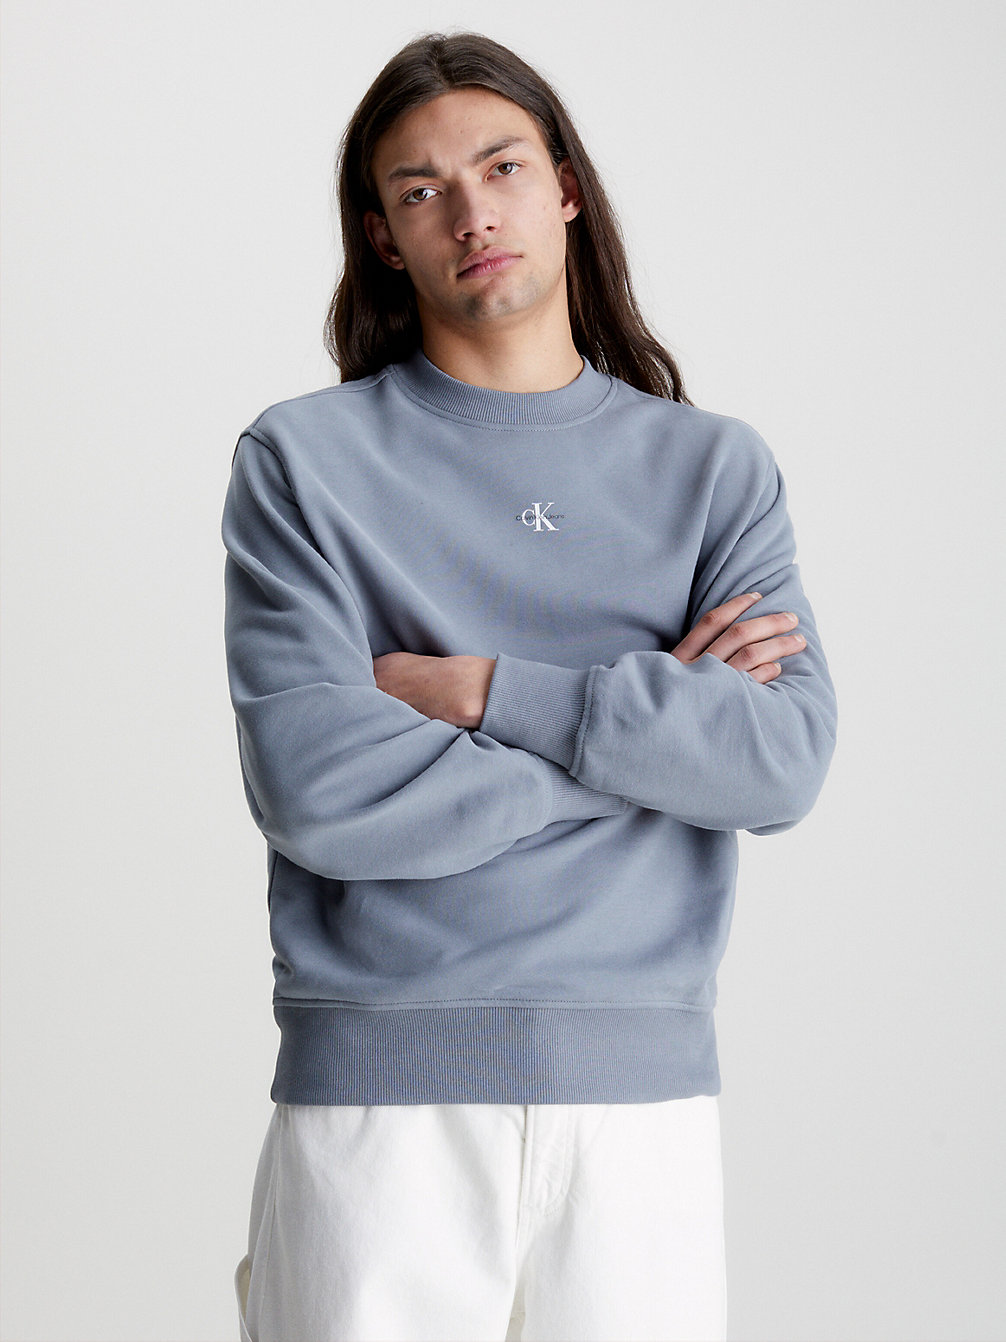 OVERCAST GREY Relaxed Sweatshirt Met Monogram undefined heren Calvin Klein